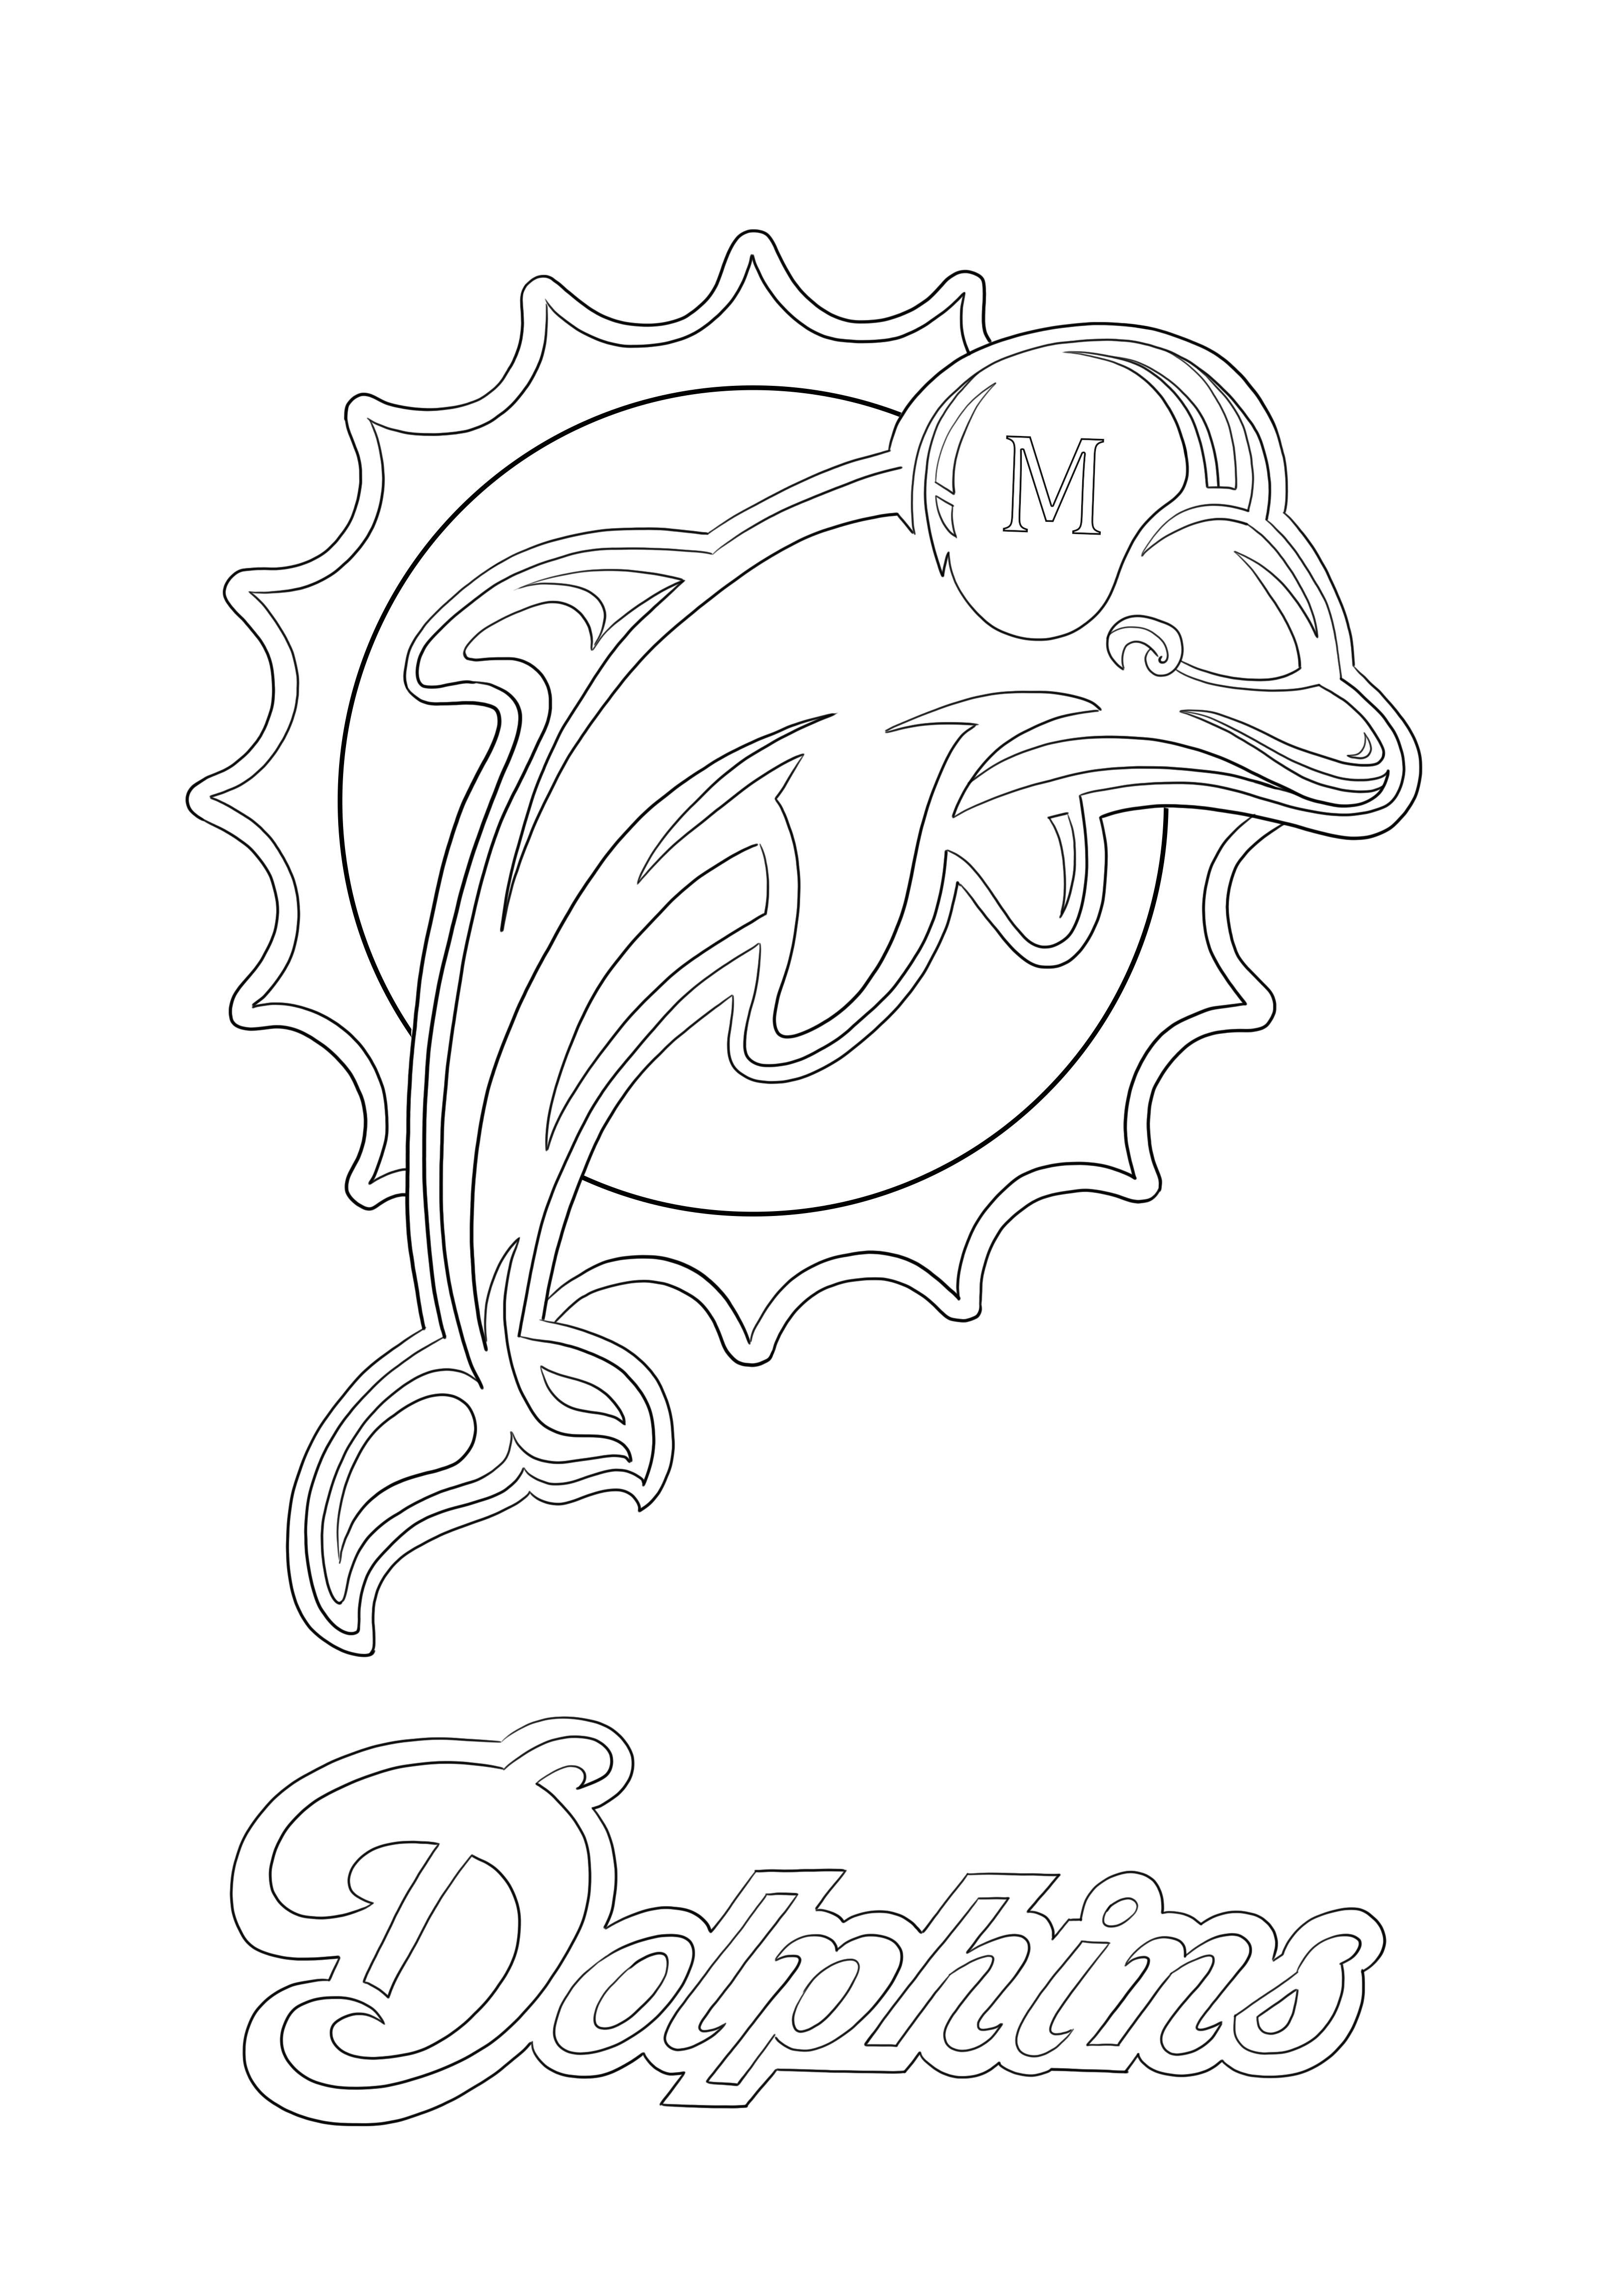 Stampa e colorazione del logo dei Miami Dolphins